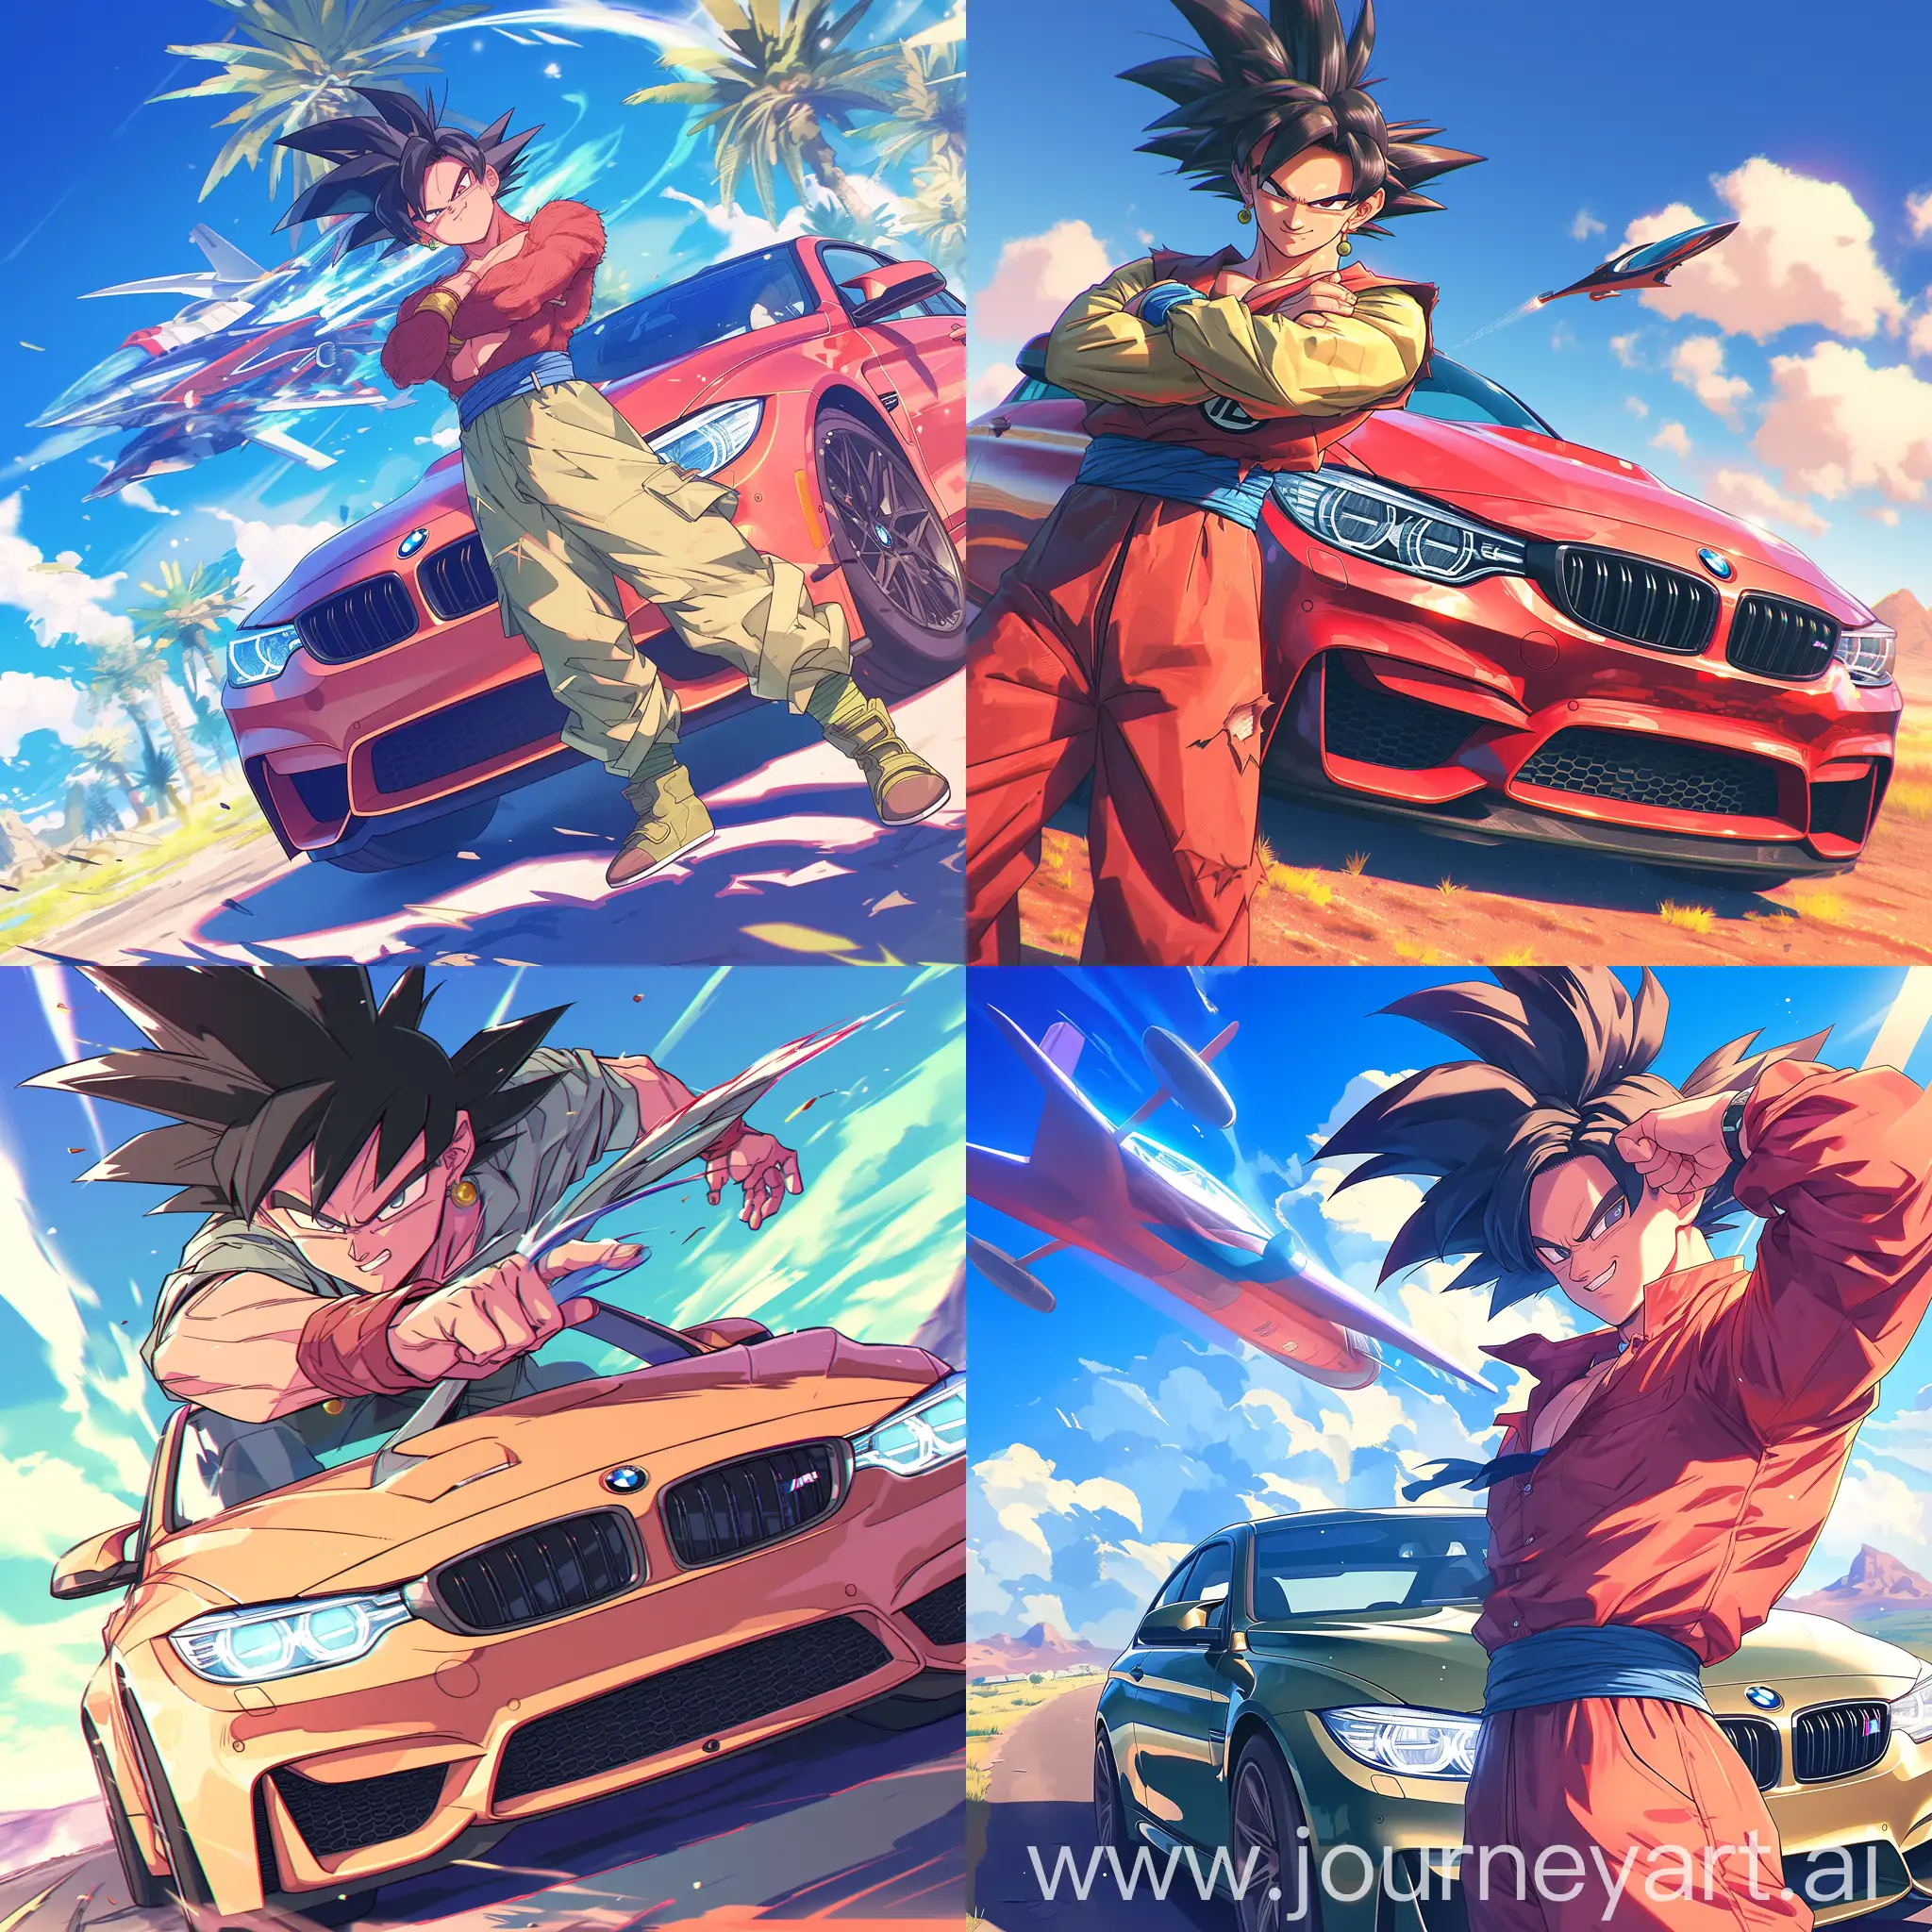 Goku-Strikes-a-Dynamic-Pose-with-BMW-M4-in-Dragon-Ball-Z-Era